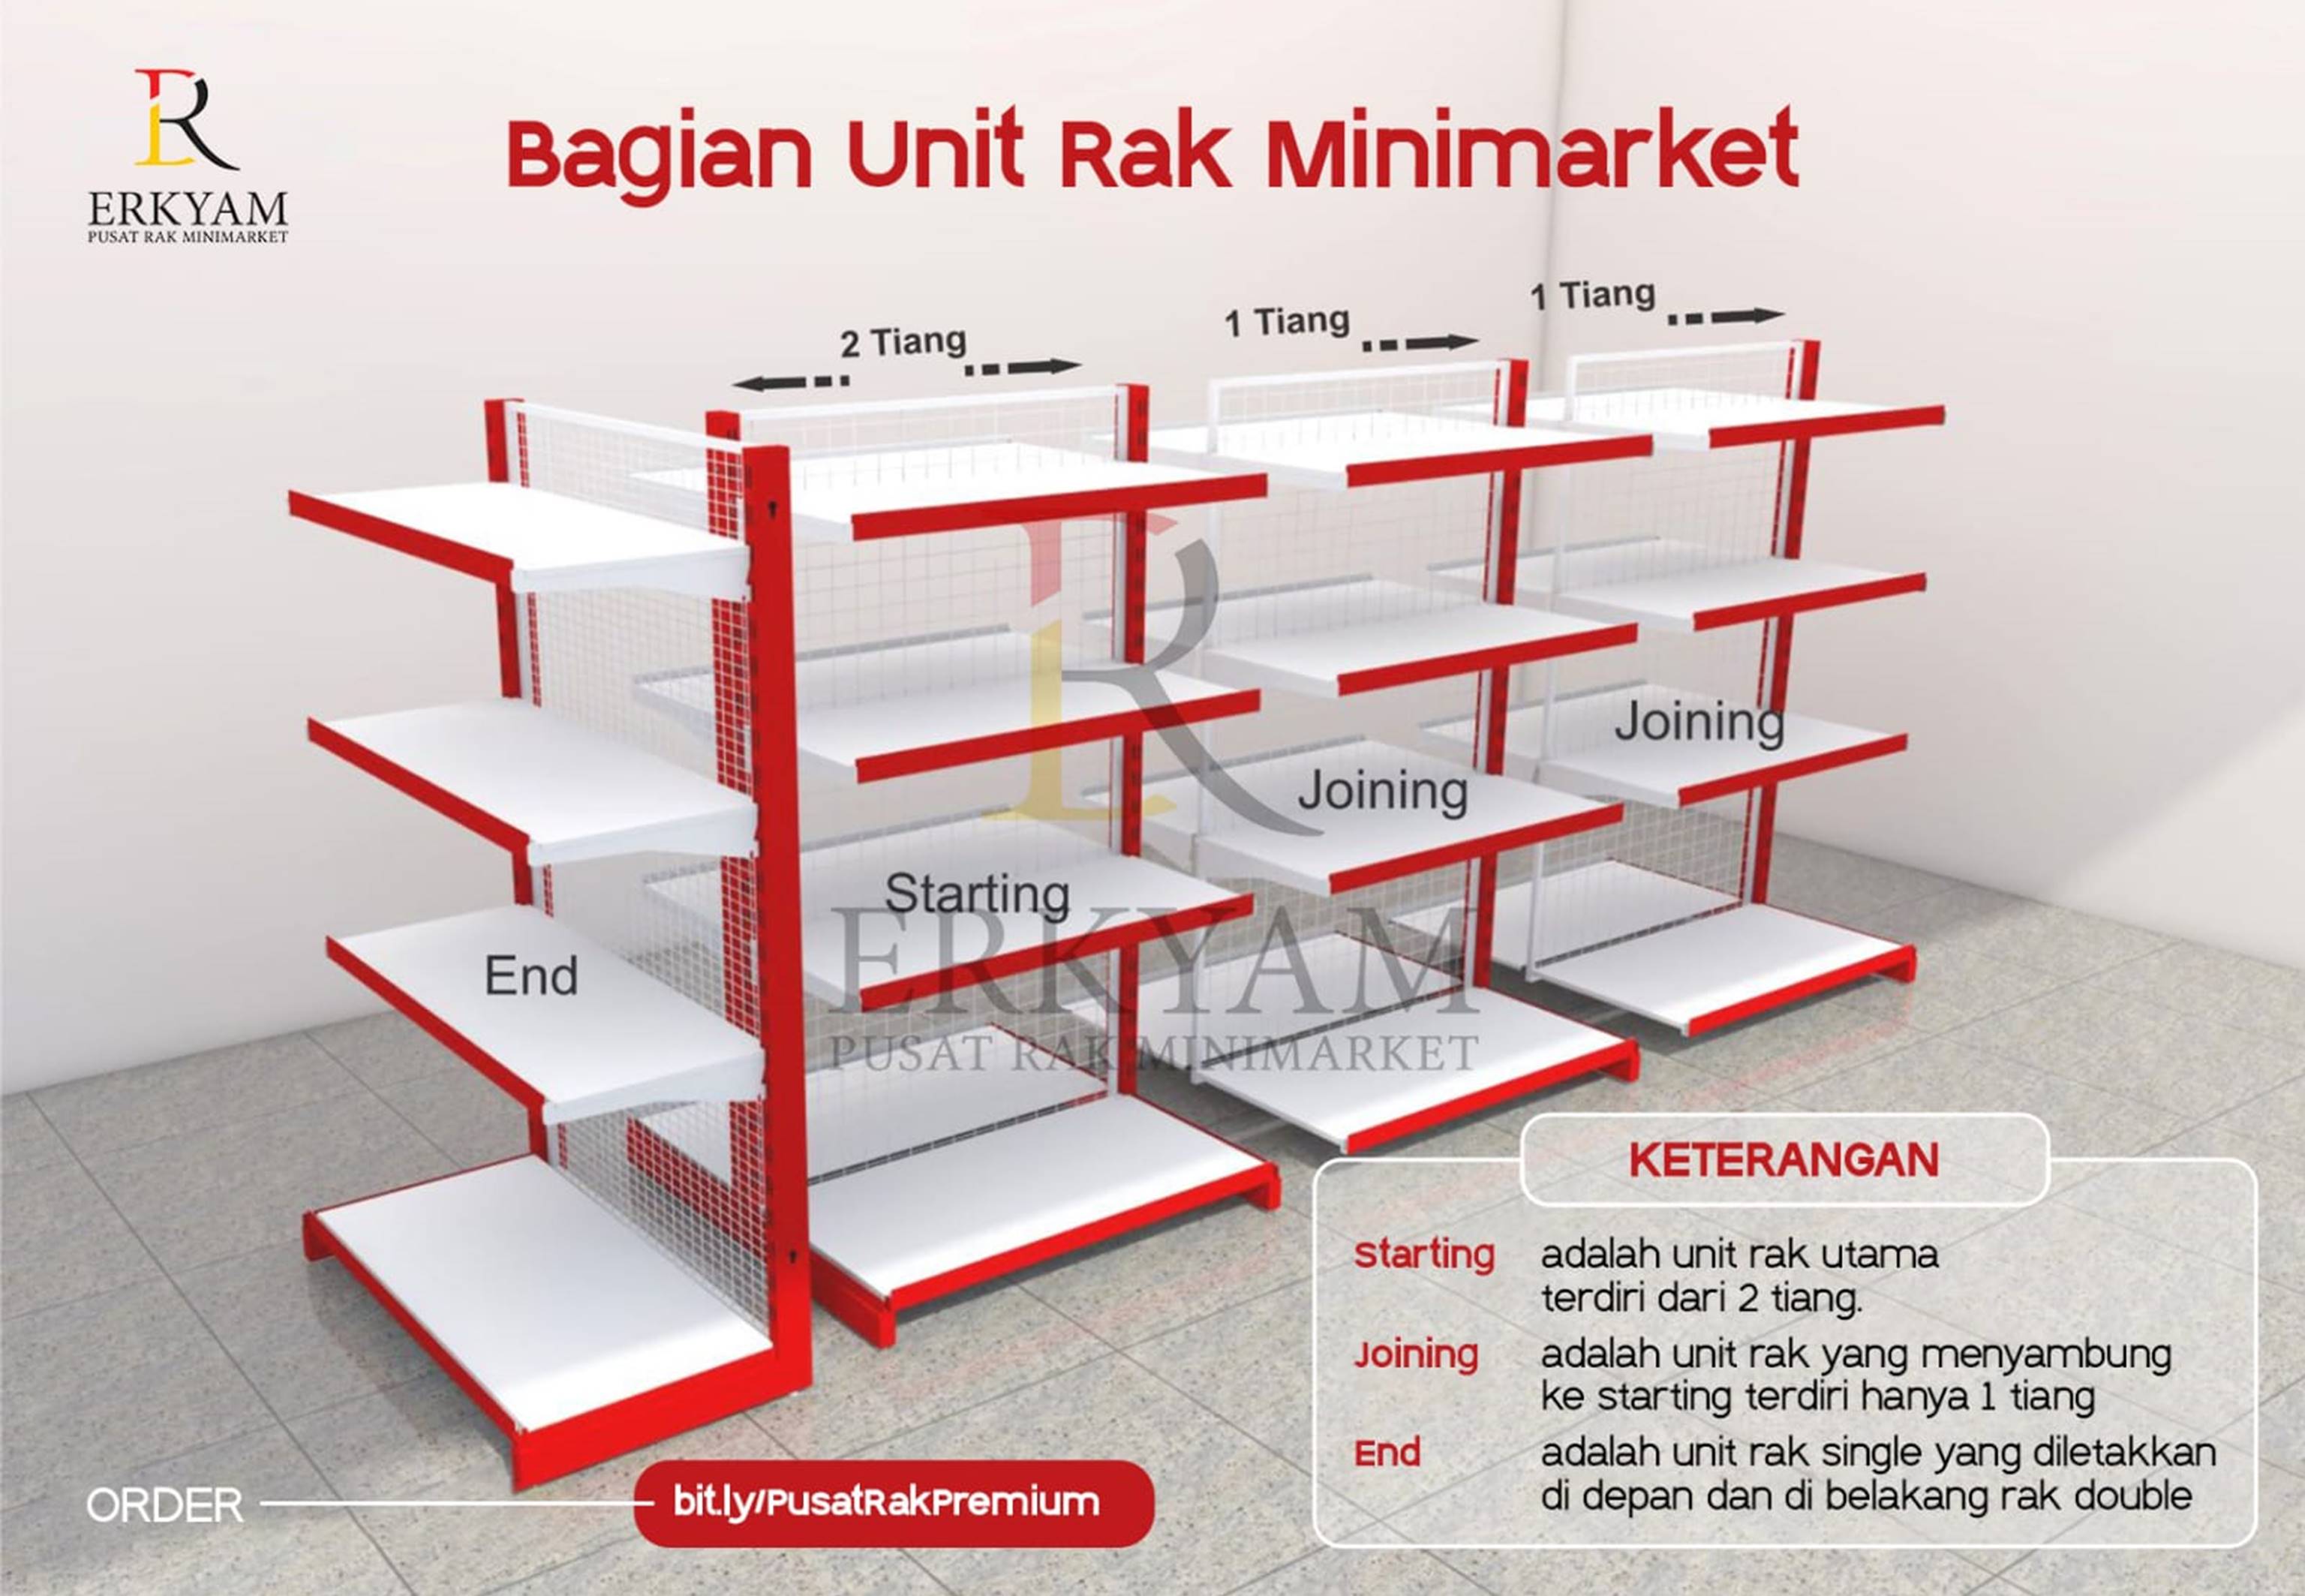 ERKYAM Distributor Rak Minimarket wilayah Malaka Nusa Tenggara Timur